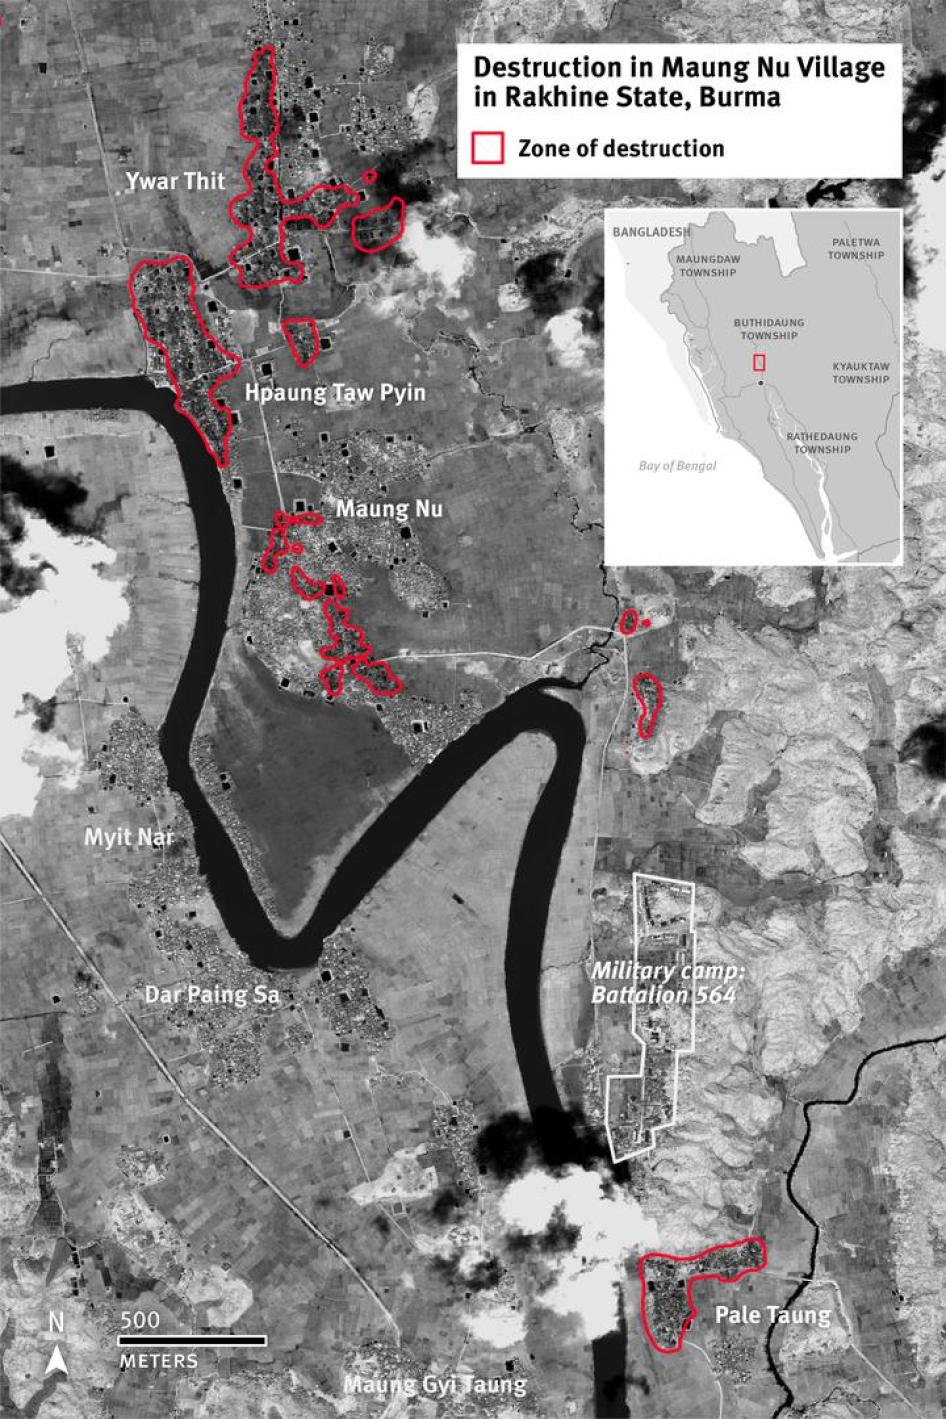 Image satellite montrant la zone de destruction dans le village de Maung Nu et ses environs, dans l’État de Rakhine en Birmanie, depuis août 2017.